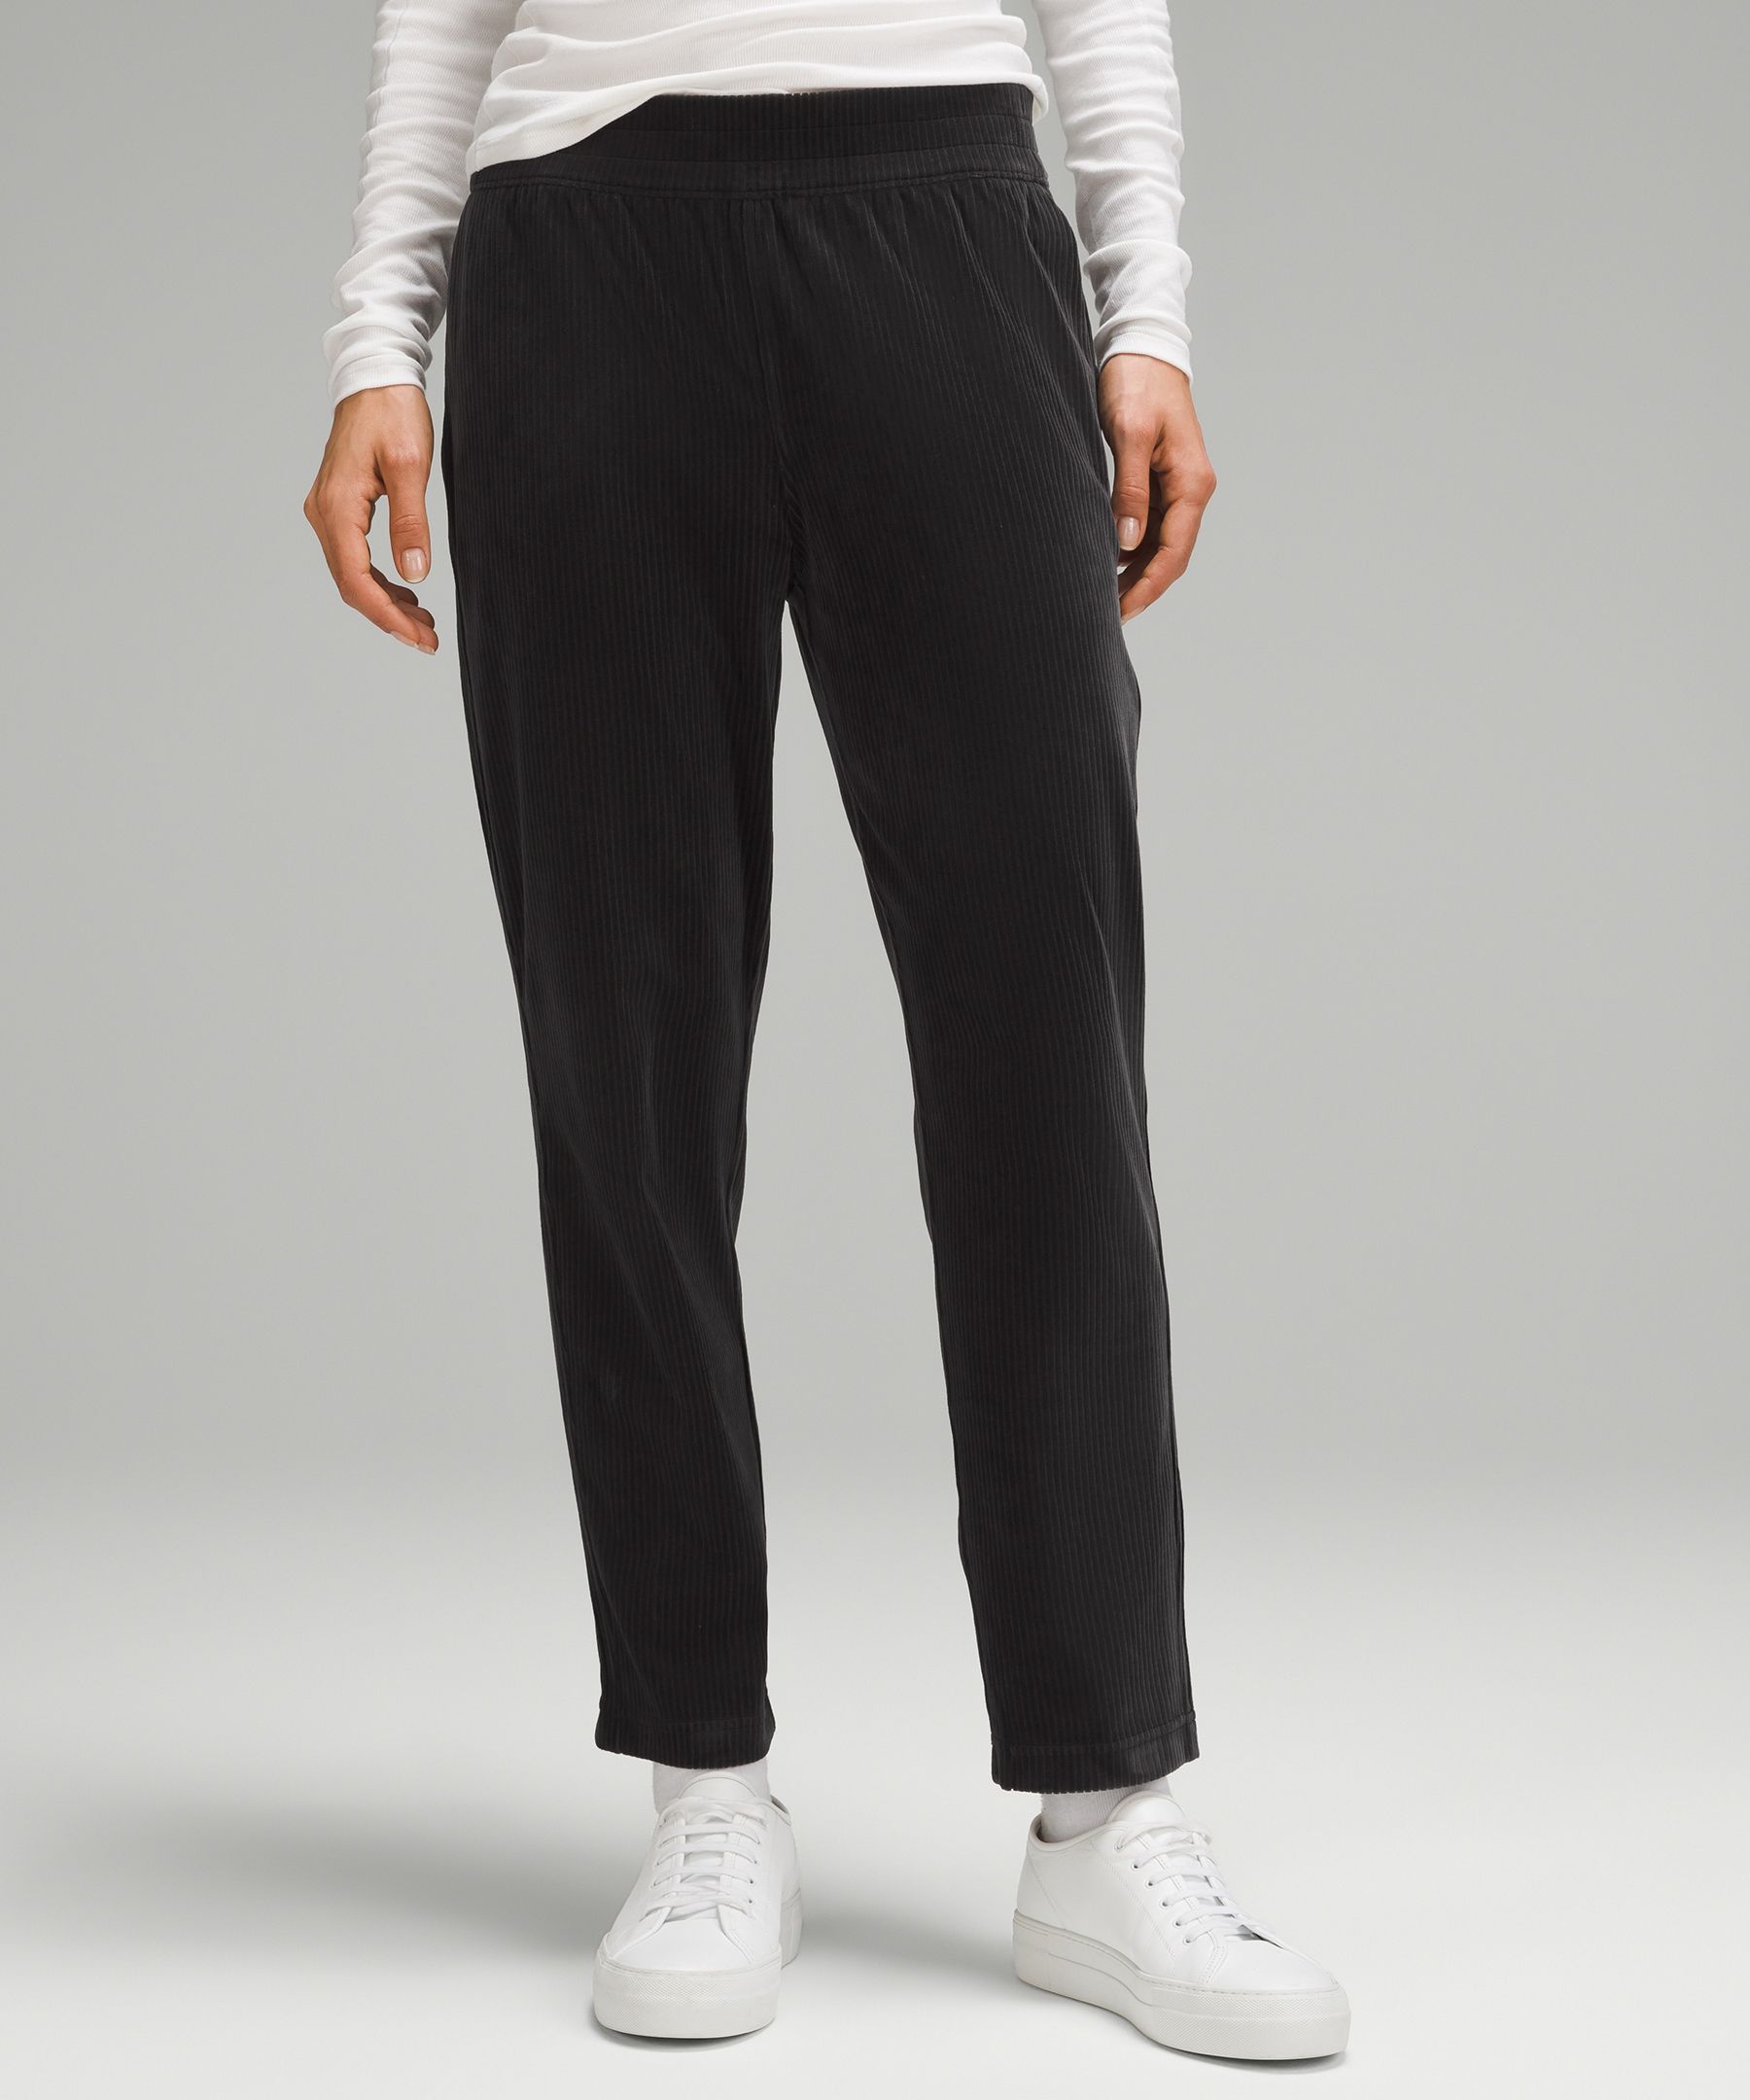 Lululemon Scuba Mid-rise Straight-leg Pants 7/8 Length Velvet Cord